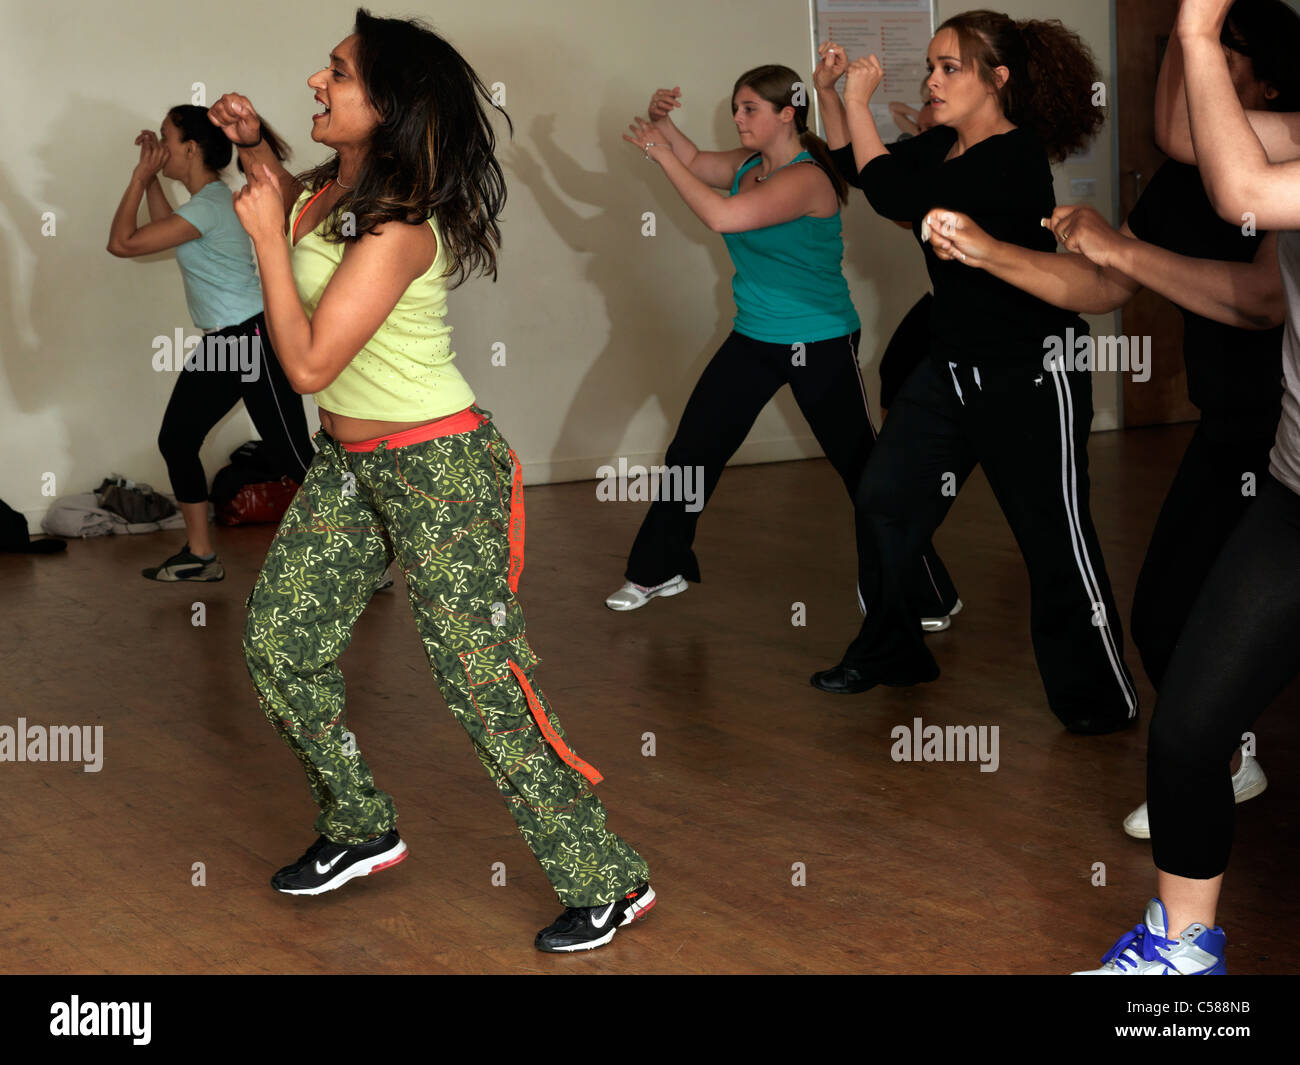 Grupo De Mujeres Jóvenes En Ropa Deportiva En Clase De Baile Fitness De  Zumba Imagen de archivo - Imagen de mudanza, salud: 180577231